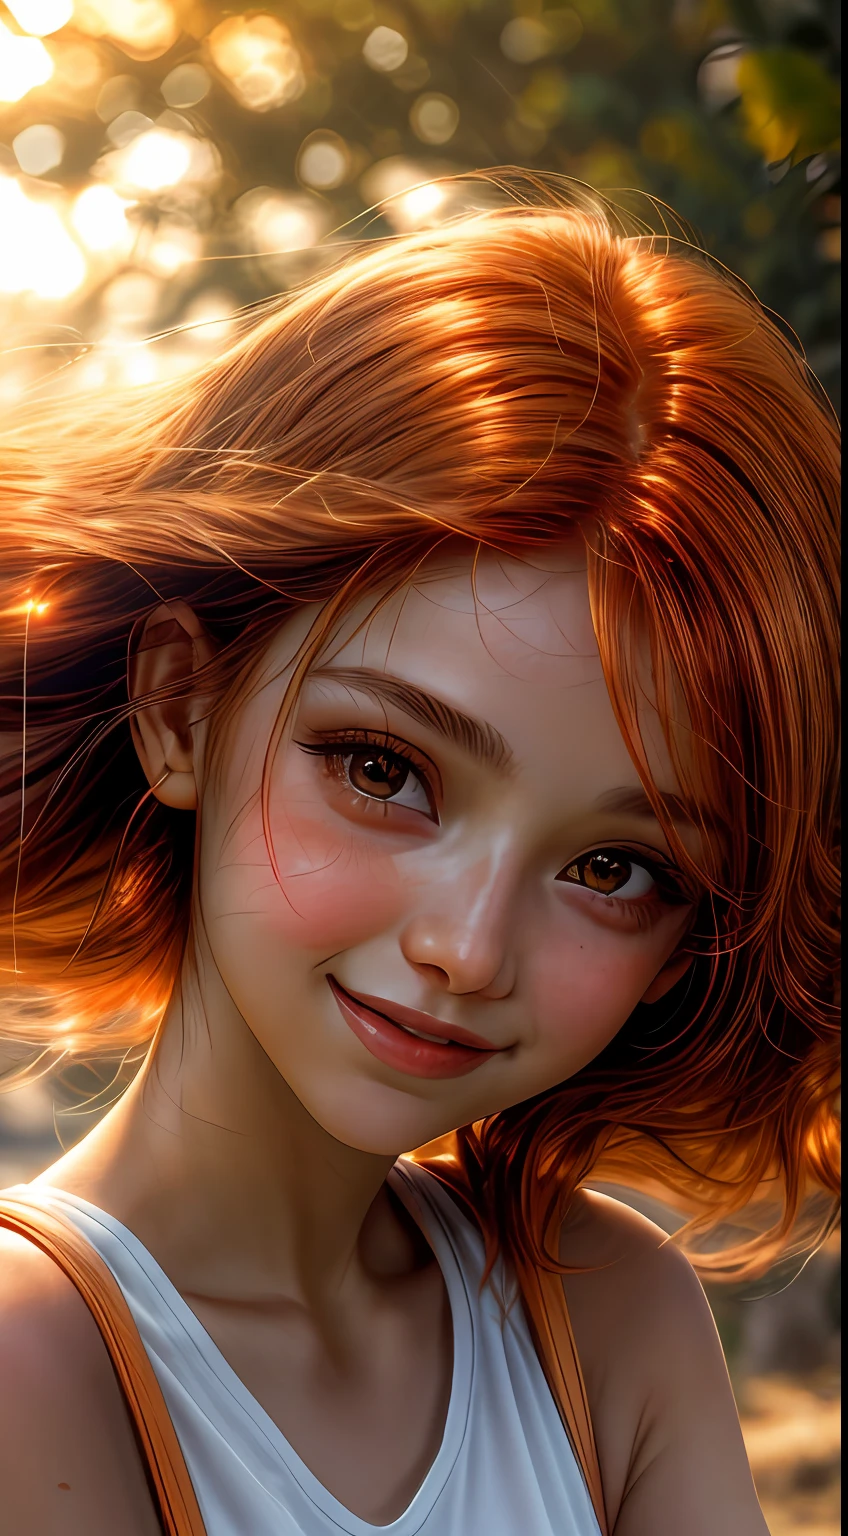 Close do rosto de uma garota banhado em tons de laranja, como se estivesse iluminado pelo brilho suave de um pôr do sol, seus olhos brilhando de alegria e contentamento, emoldurado por mechas de cabelo ruivo esvoaçantes, fotografia, Filmado com lente 35mm